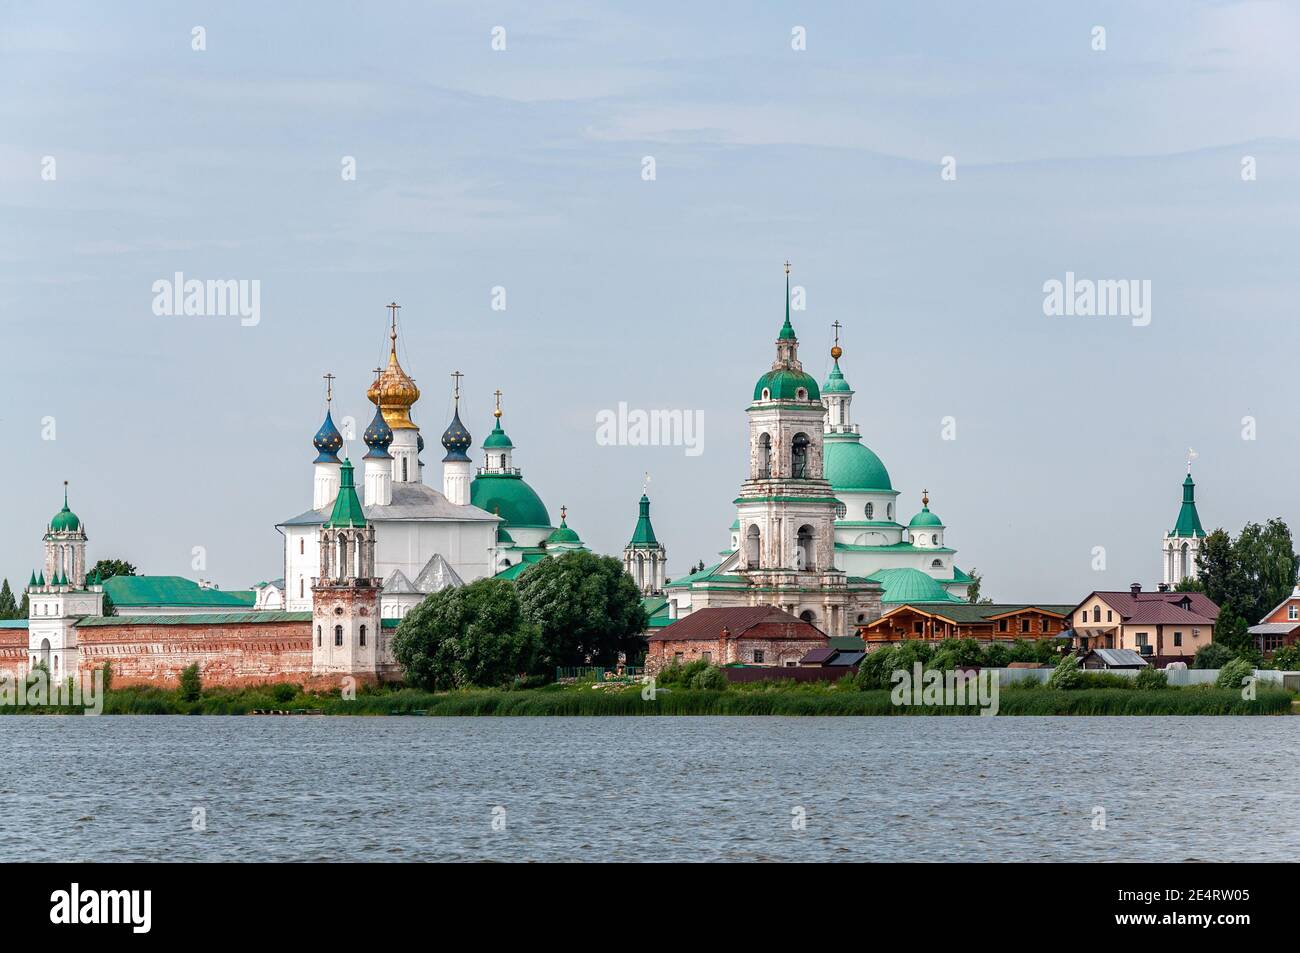 View of Spaso-Yakovlevsky Monastery in Rostov from Nero's lake. Stock Photo